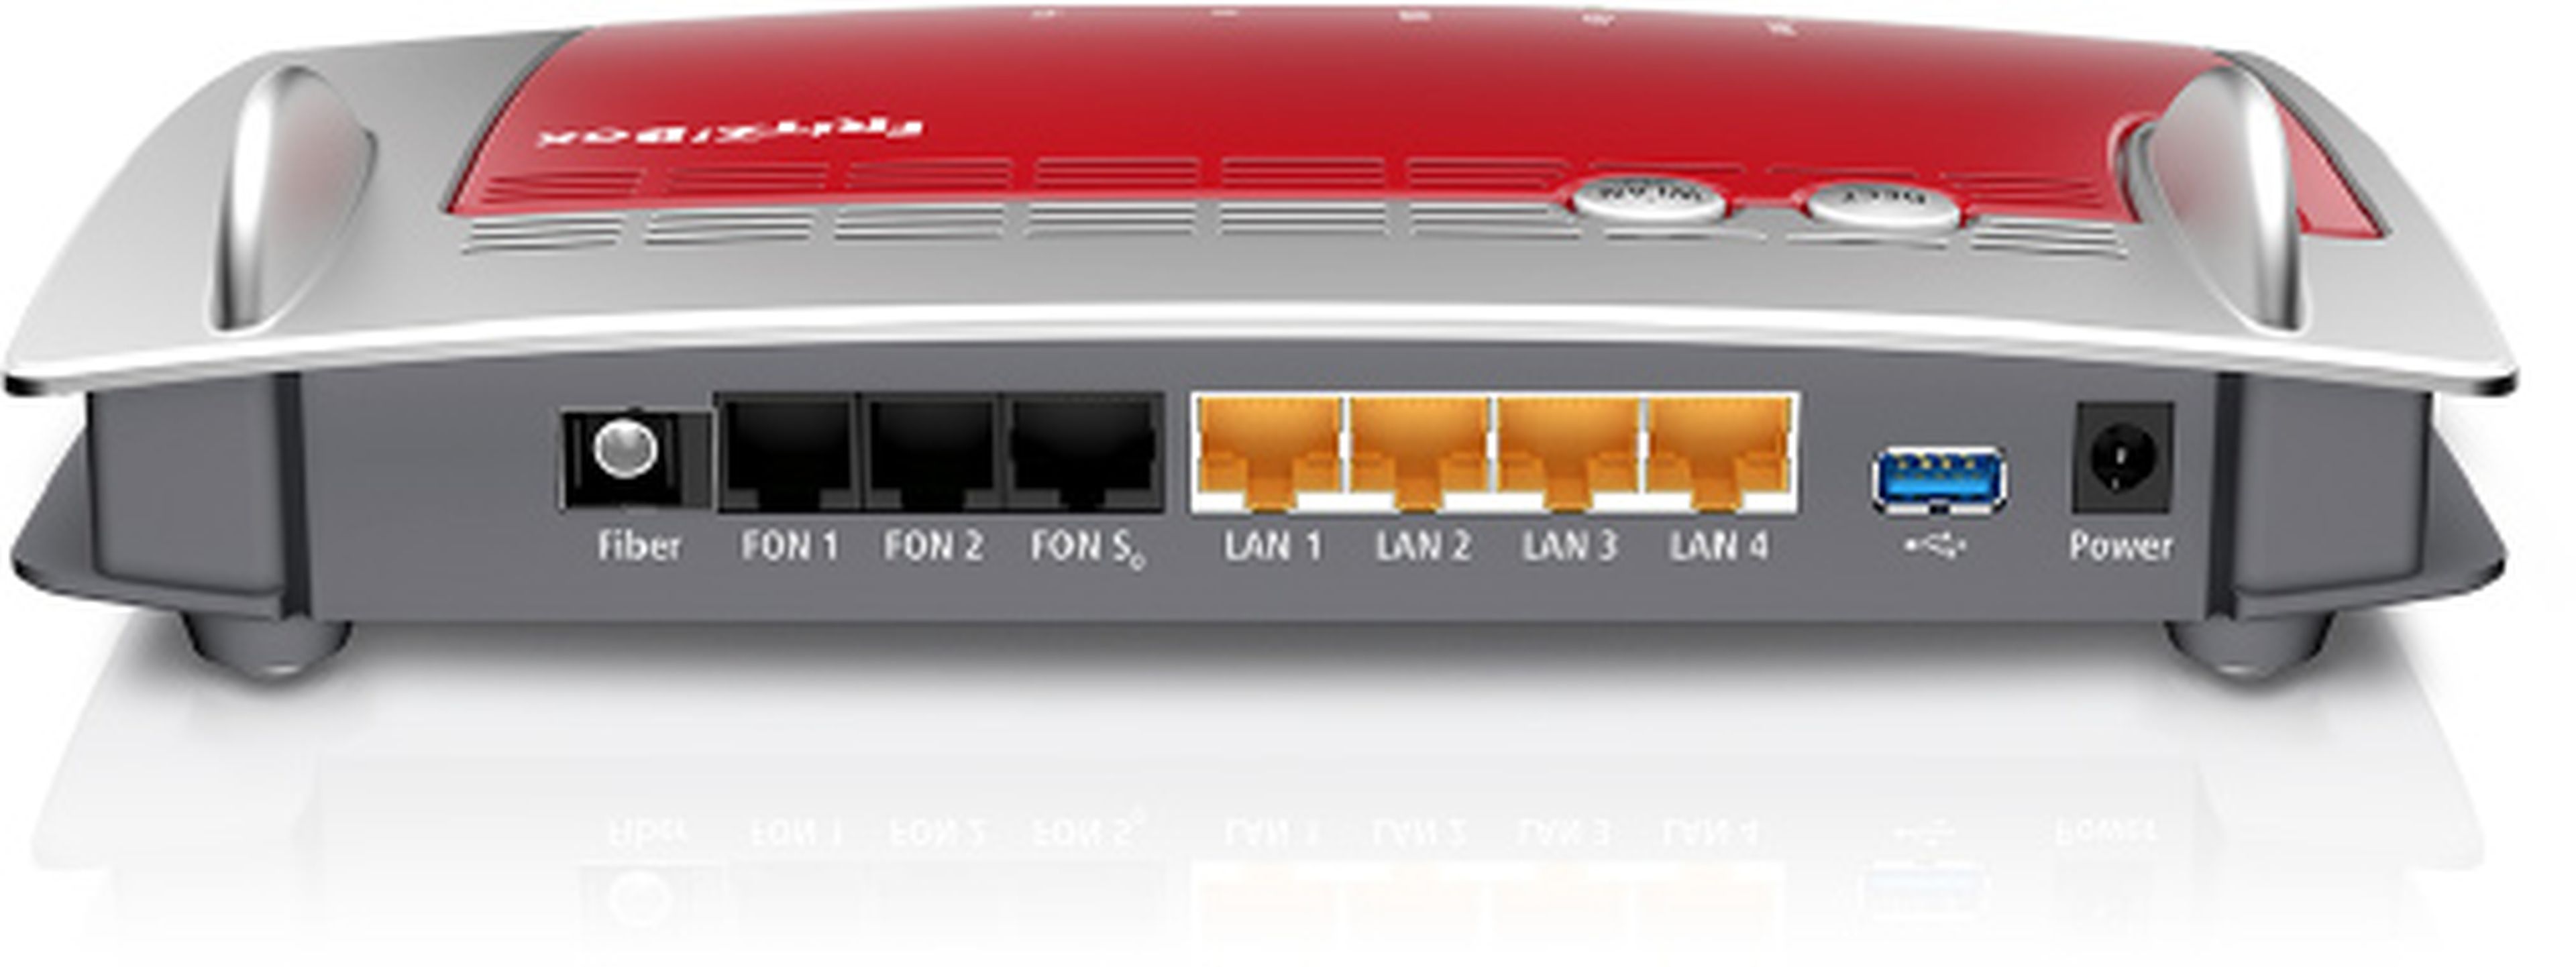 AVM lanzará nuevo FRITZ!Box 5490 para fibra óptica en febrero